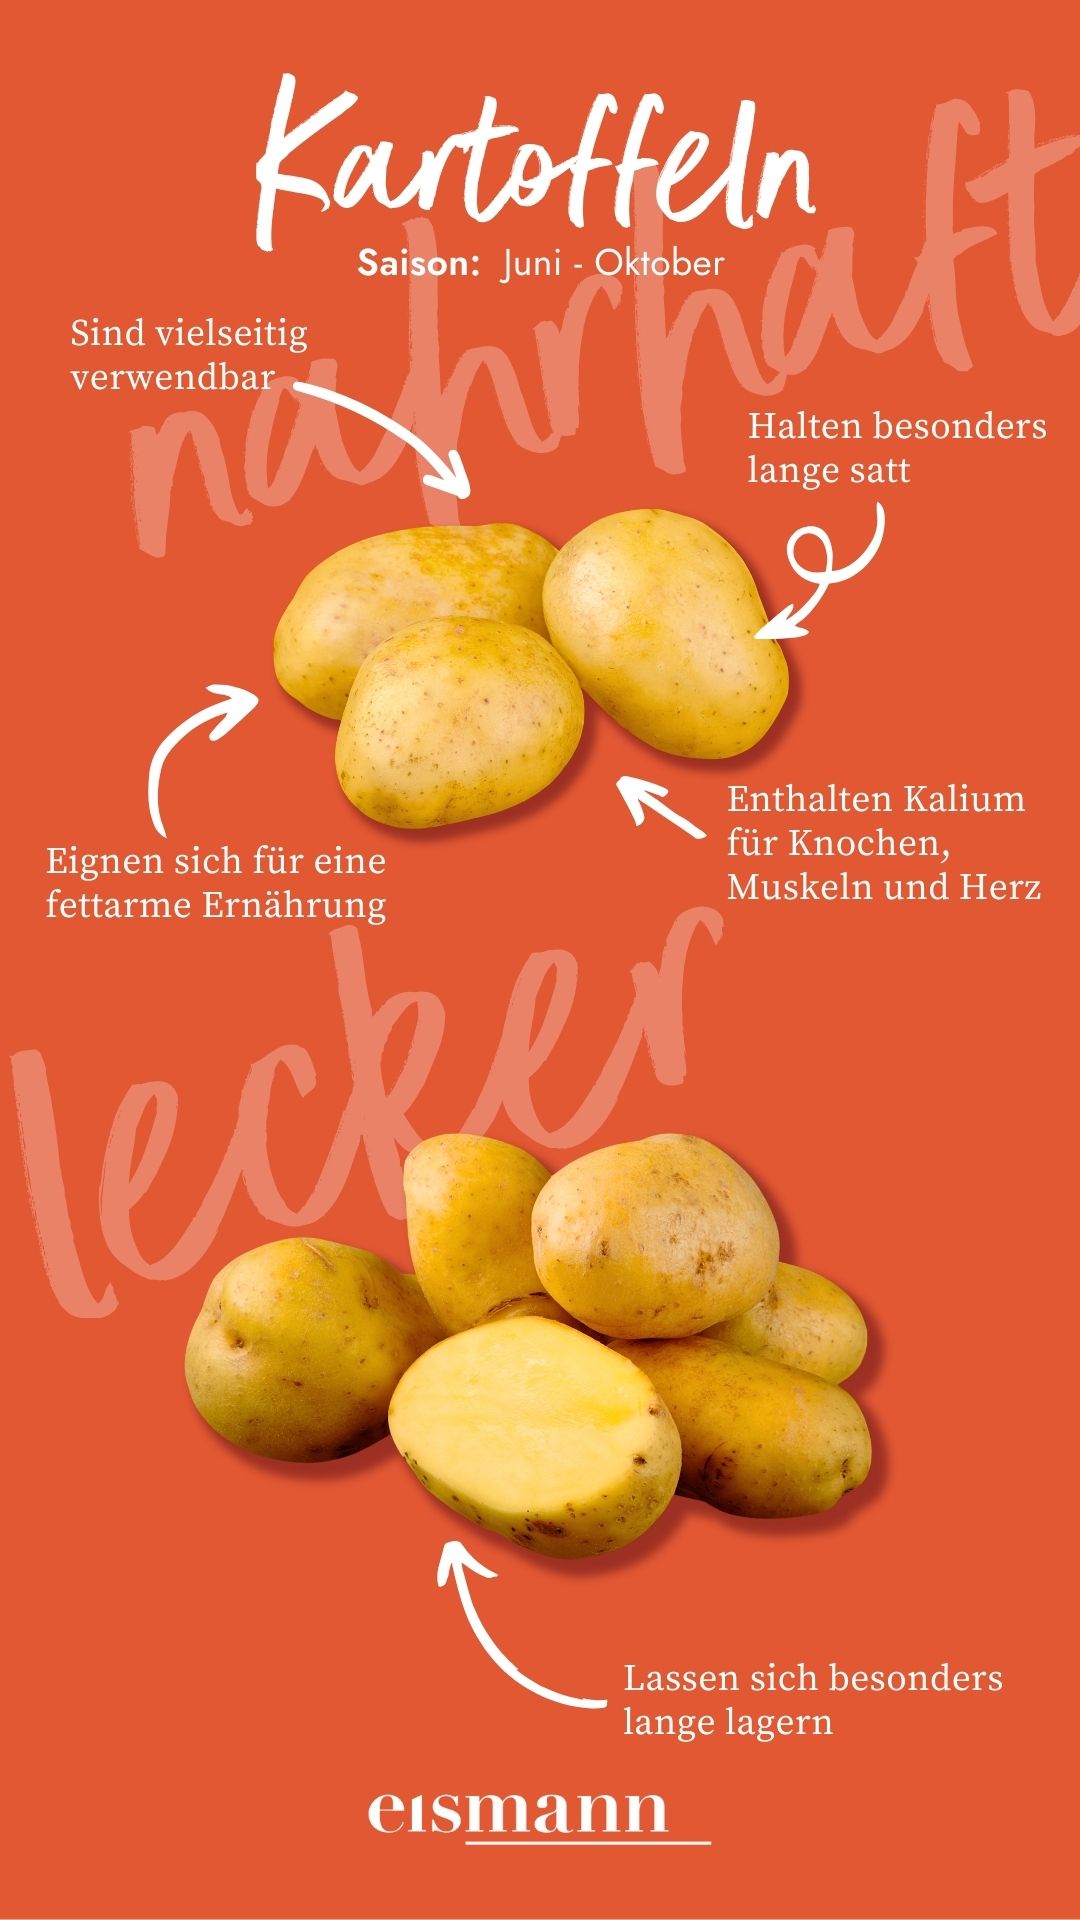 Kartoffeln - Eigenschaften, Saison und Vorteile in der Ernährung